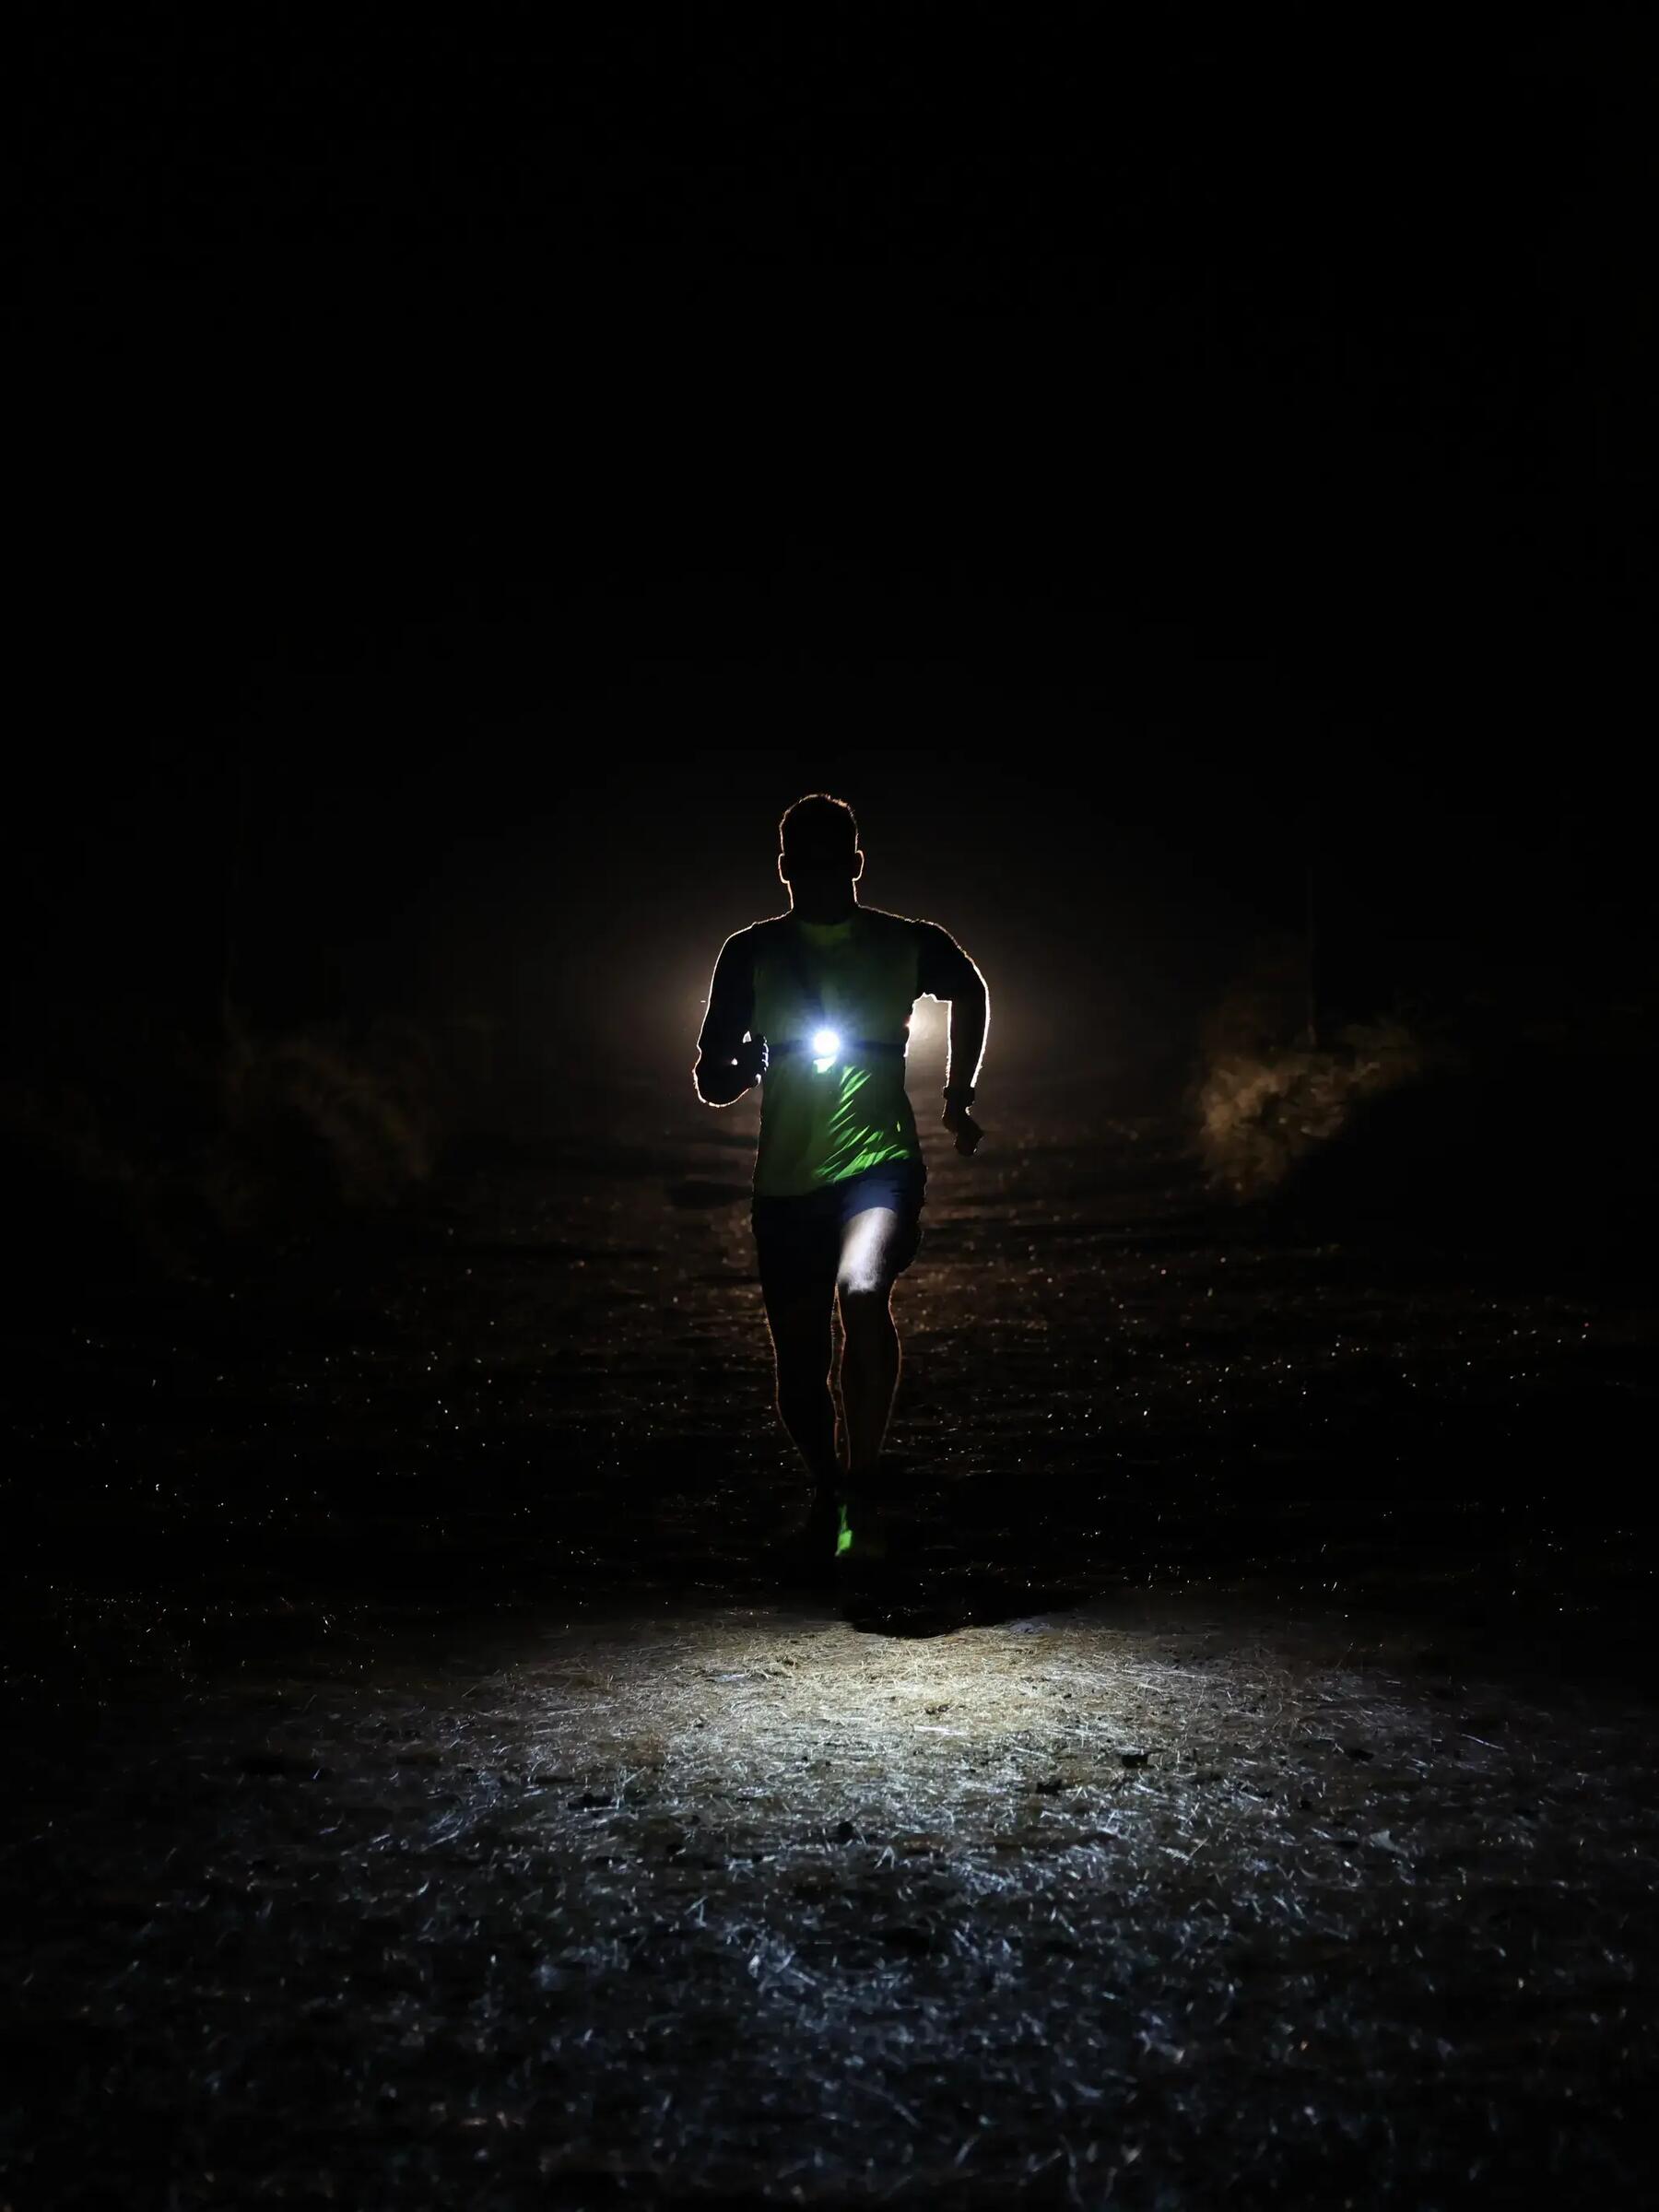 Comment courir pendant la nuit ?